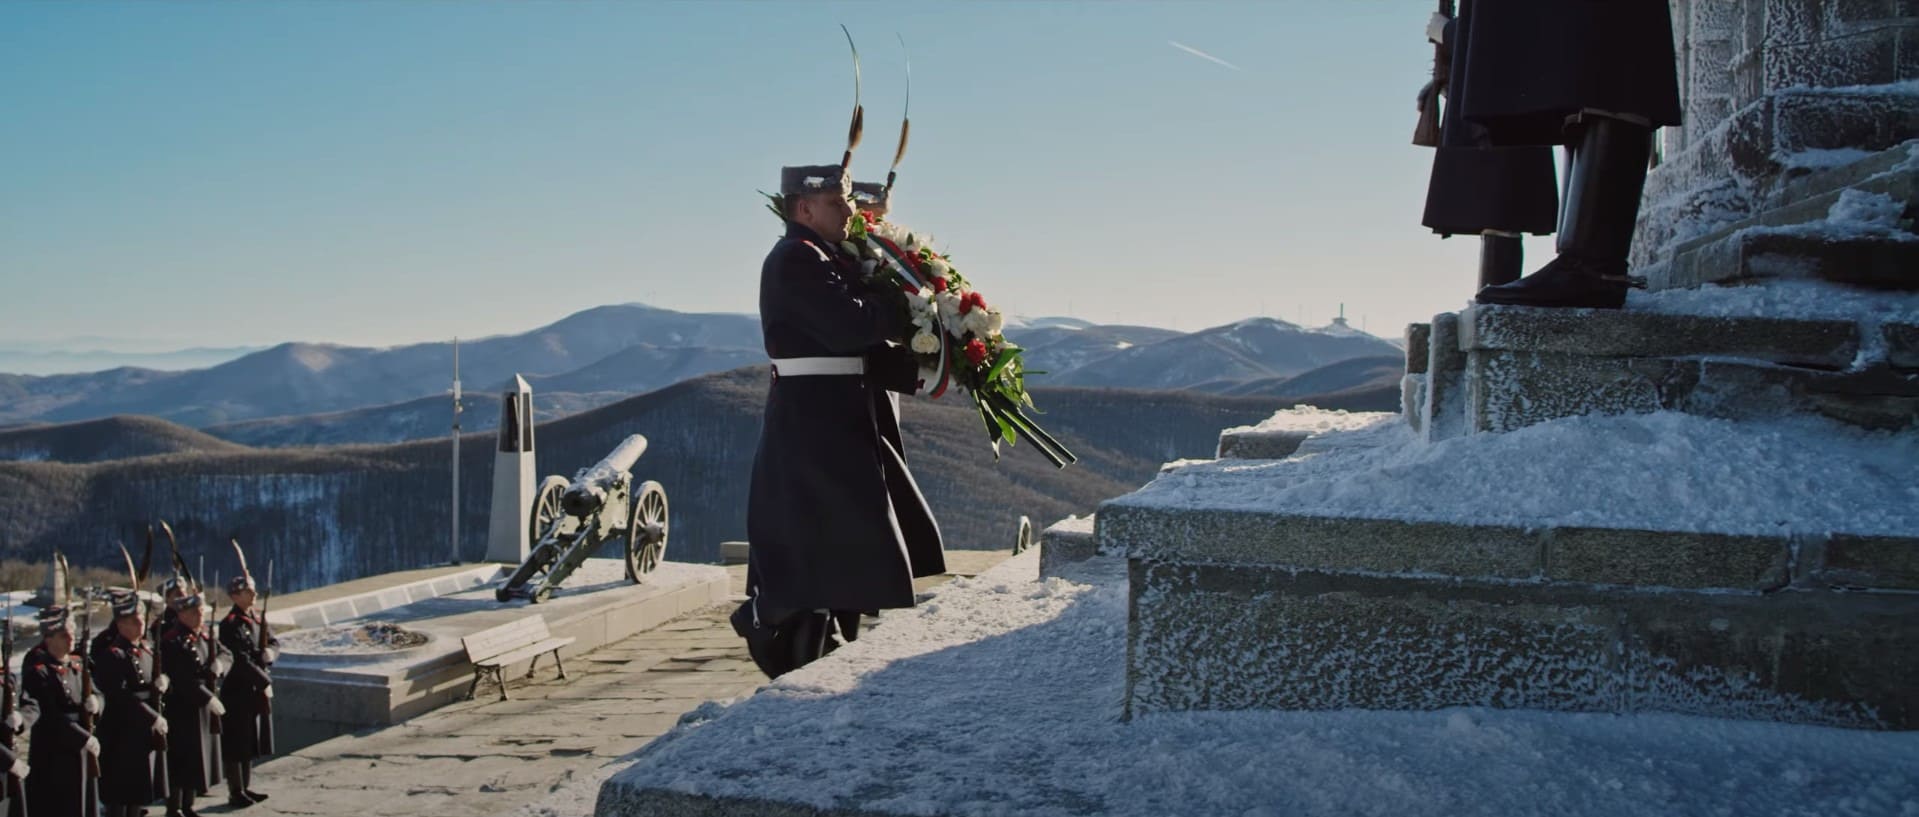 Возложение венков у памятника Свободы на горе Шипка